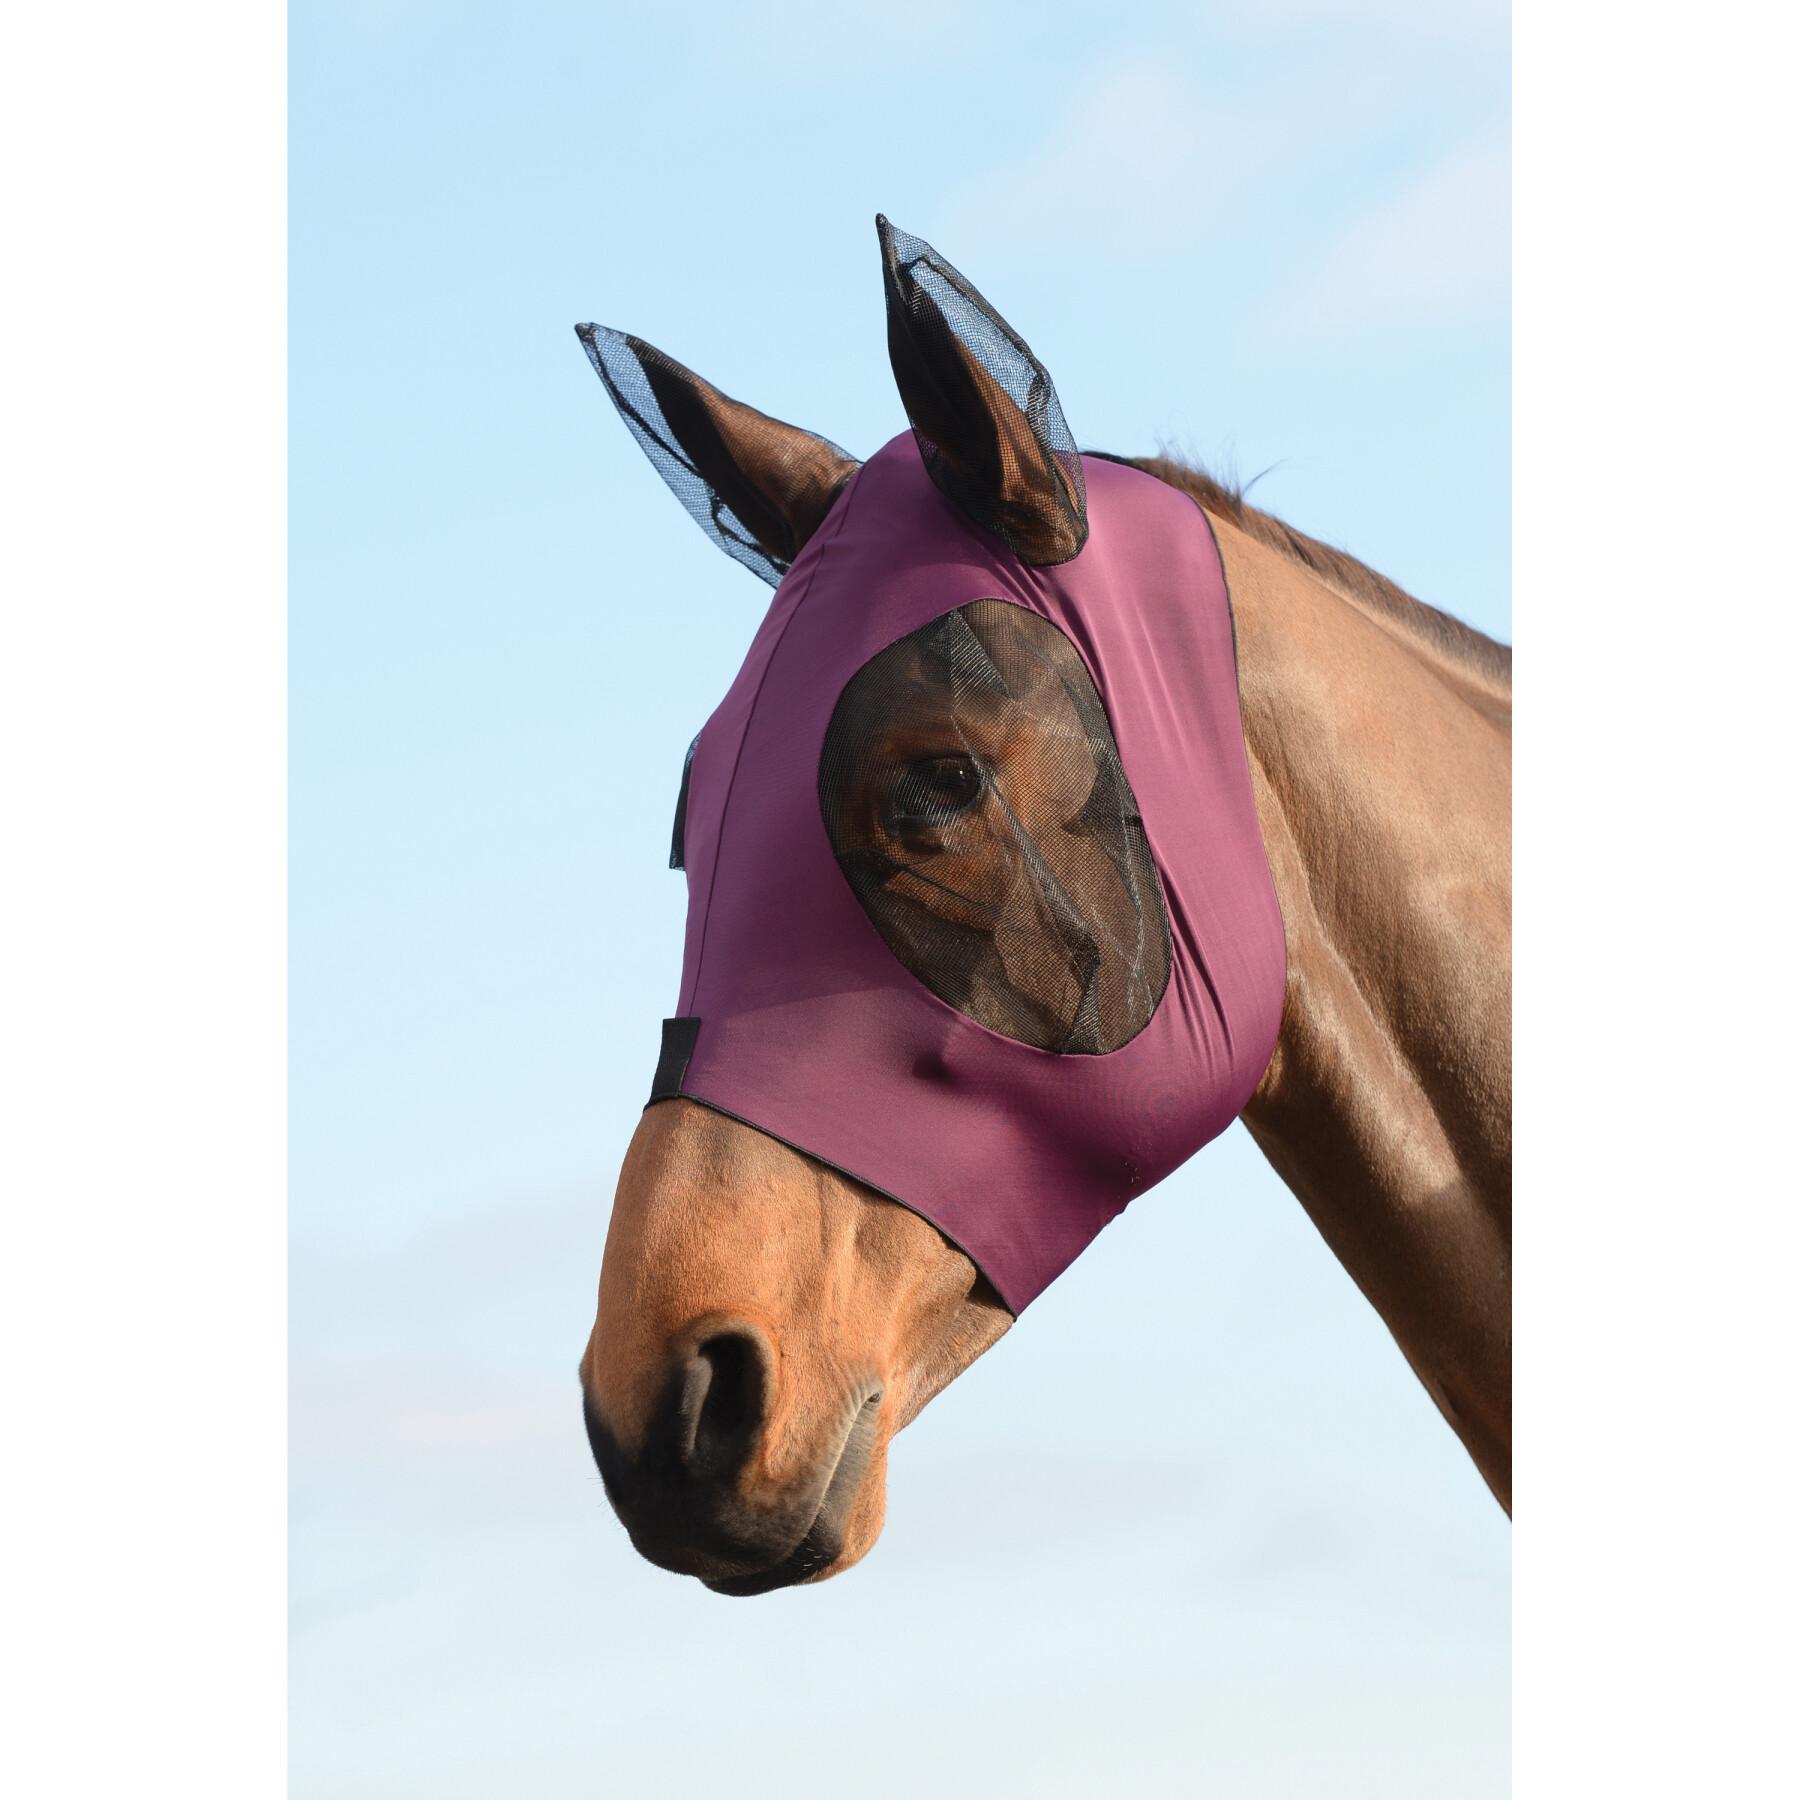 Maschera antimosche elastica per gli occhi e le orecchie del cavallo Weatherbeeta Deluxe Bug